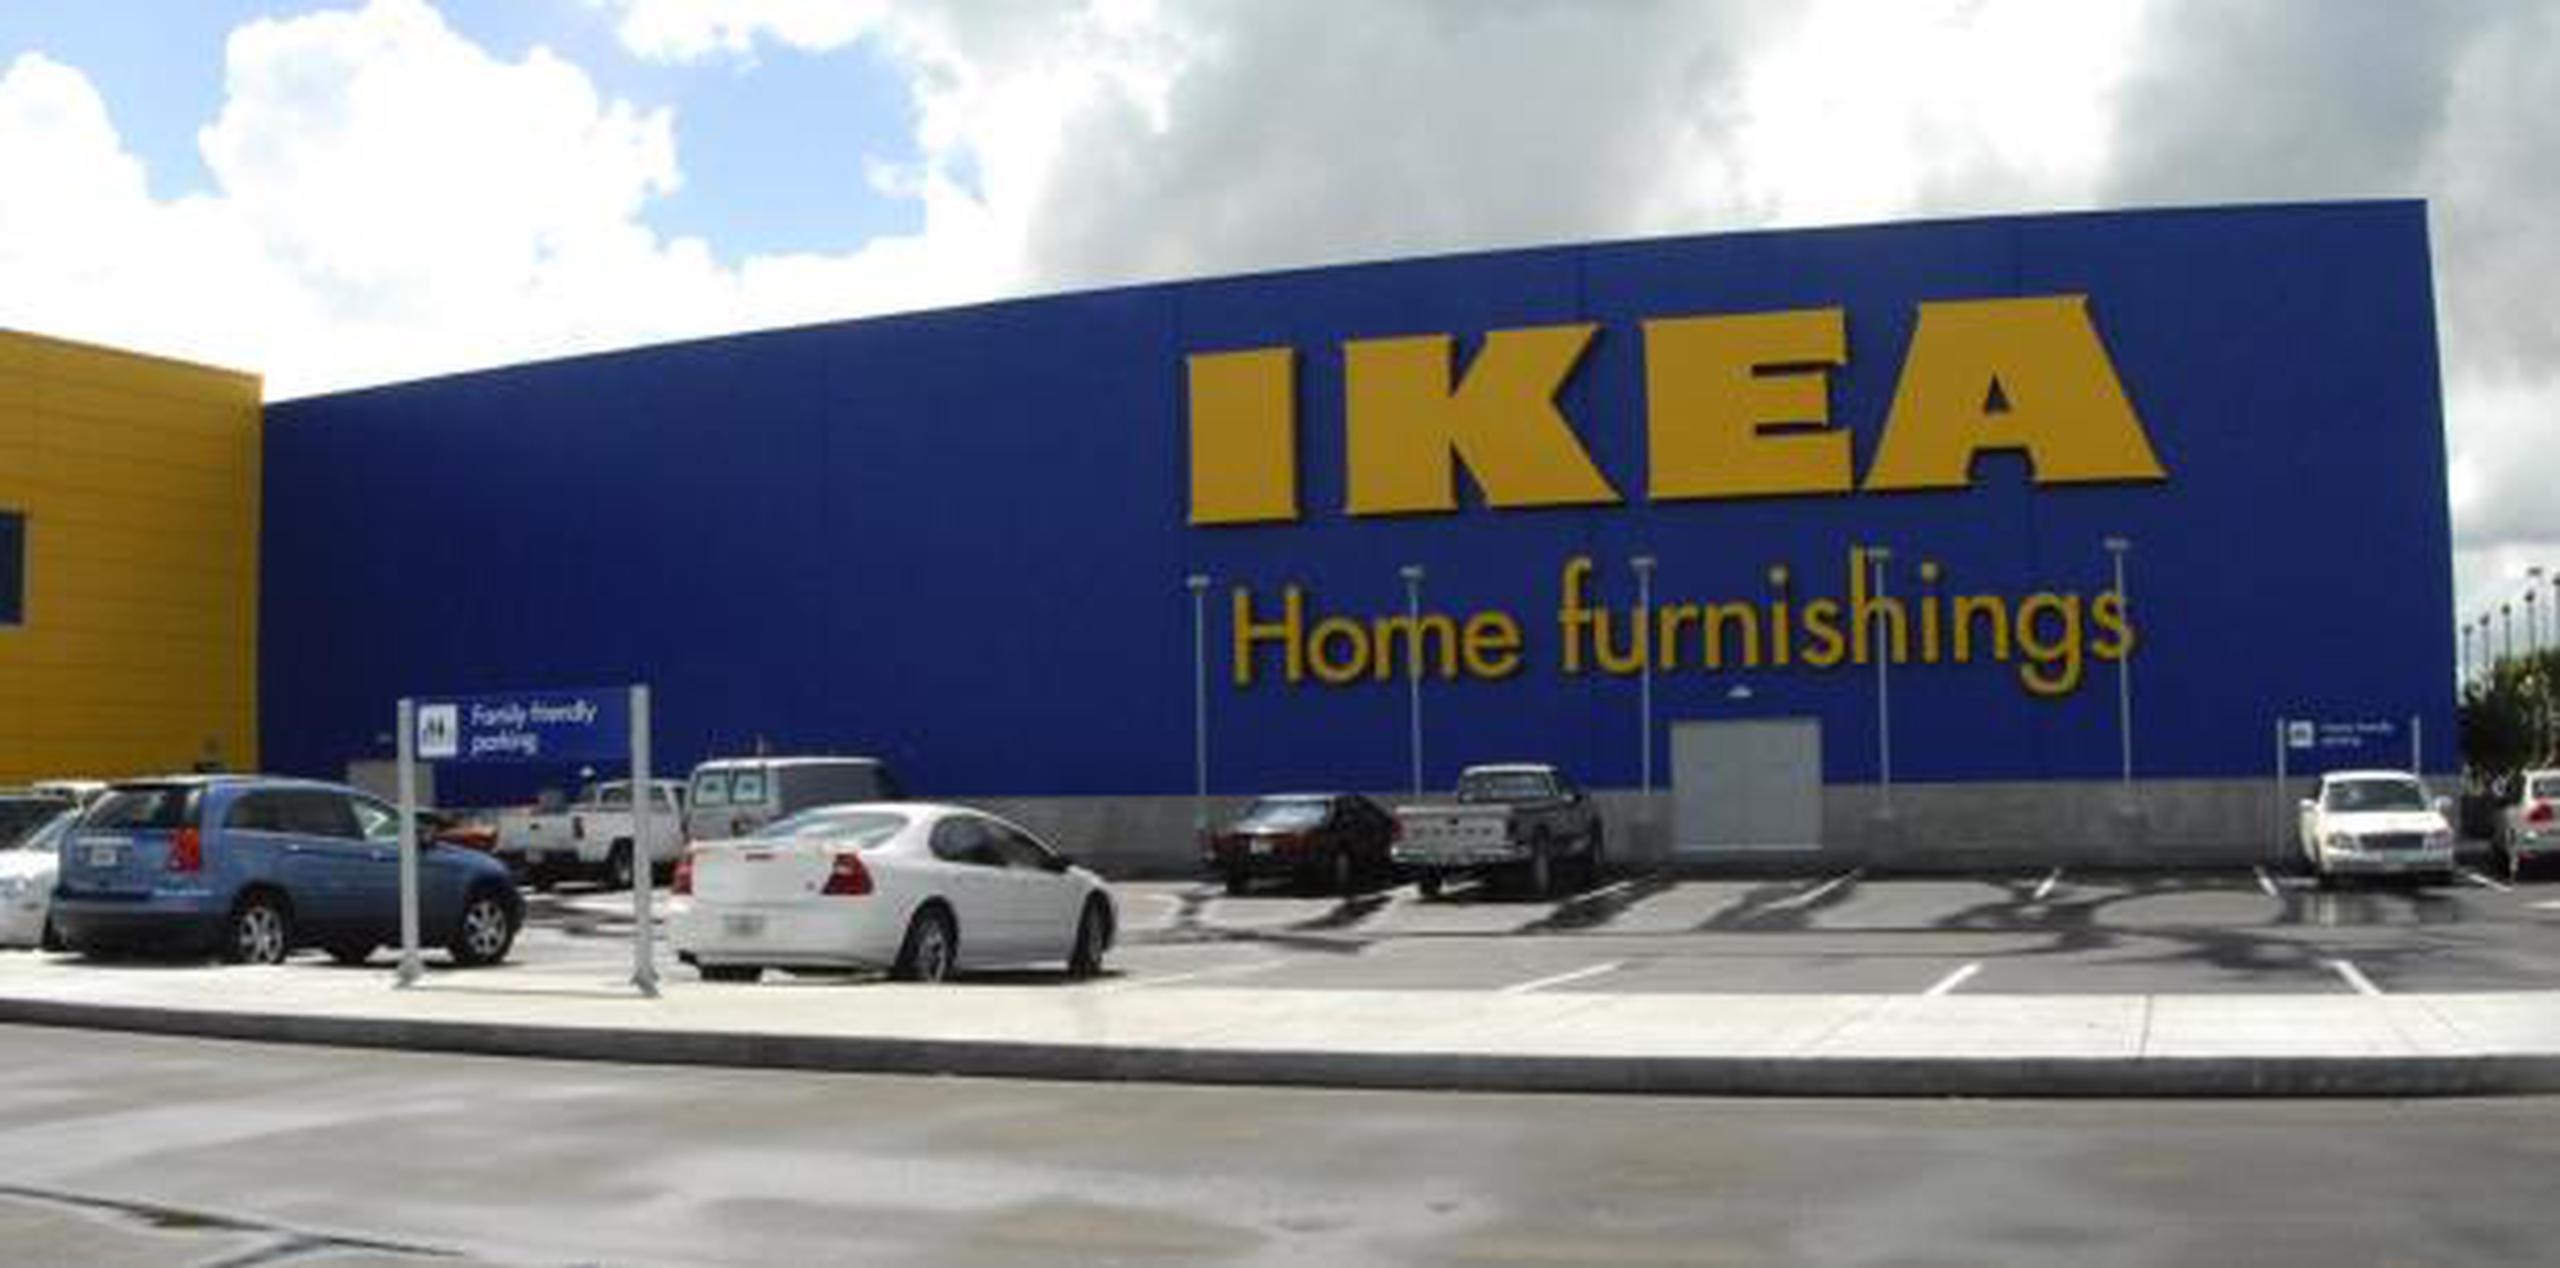 Las ventas de IKEA ascendieron en el último año fiscal a 38,800 millones de euros. (Archivo)